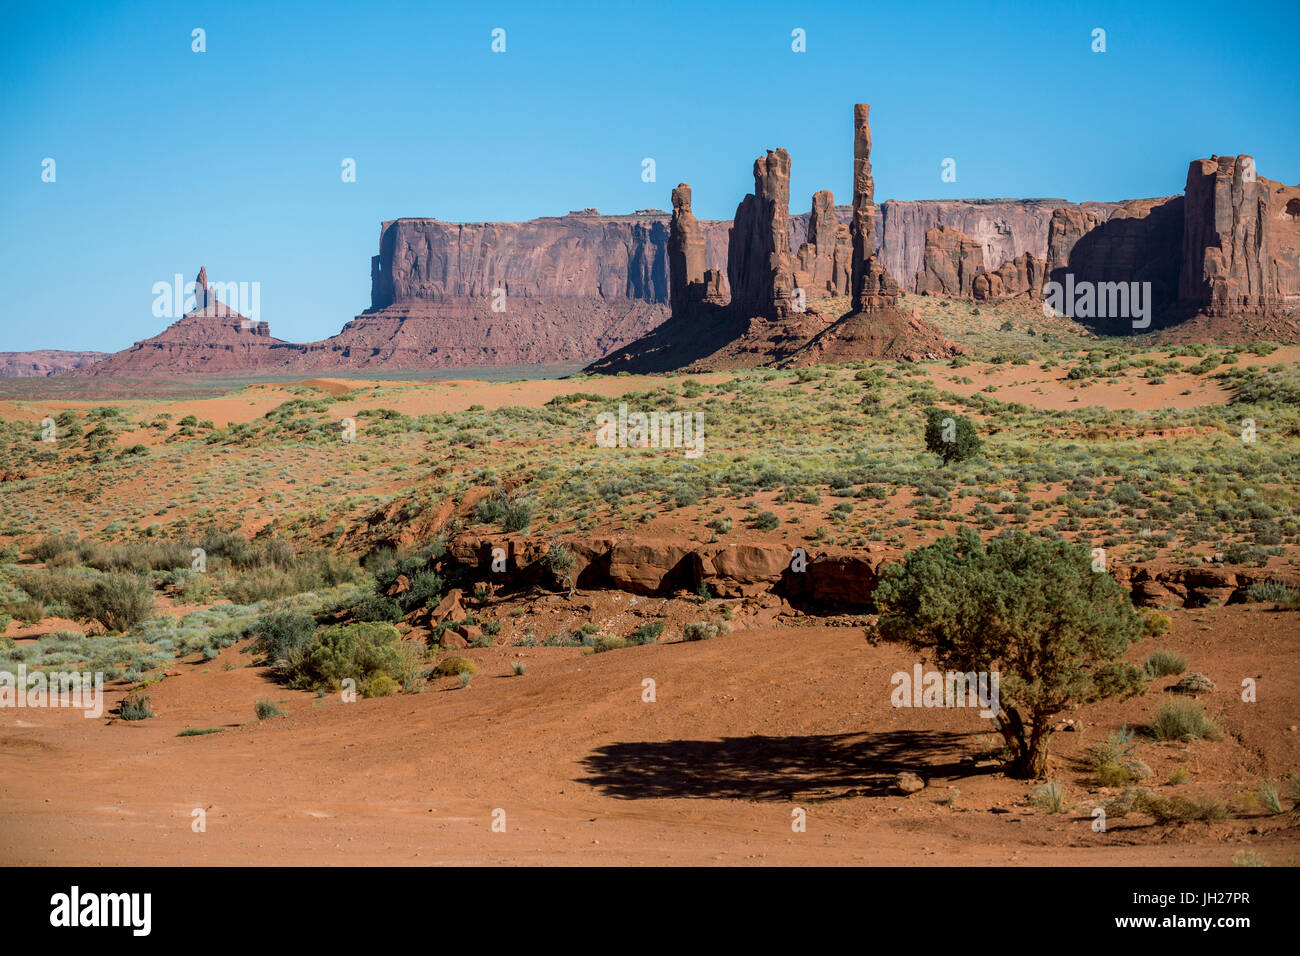 Des formations rocheuses, Monument Valley, Navajo Tribal Park, Arizona, États-Unis d'Amérique, Amérique du Nord Banque D'Images